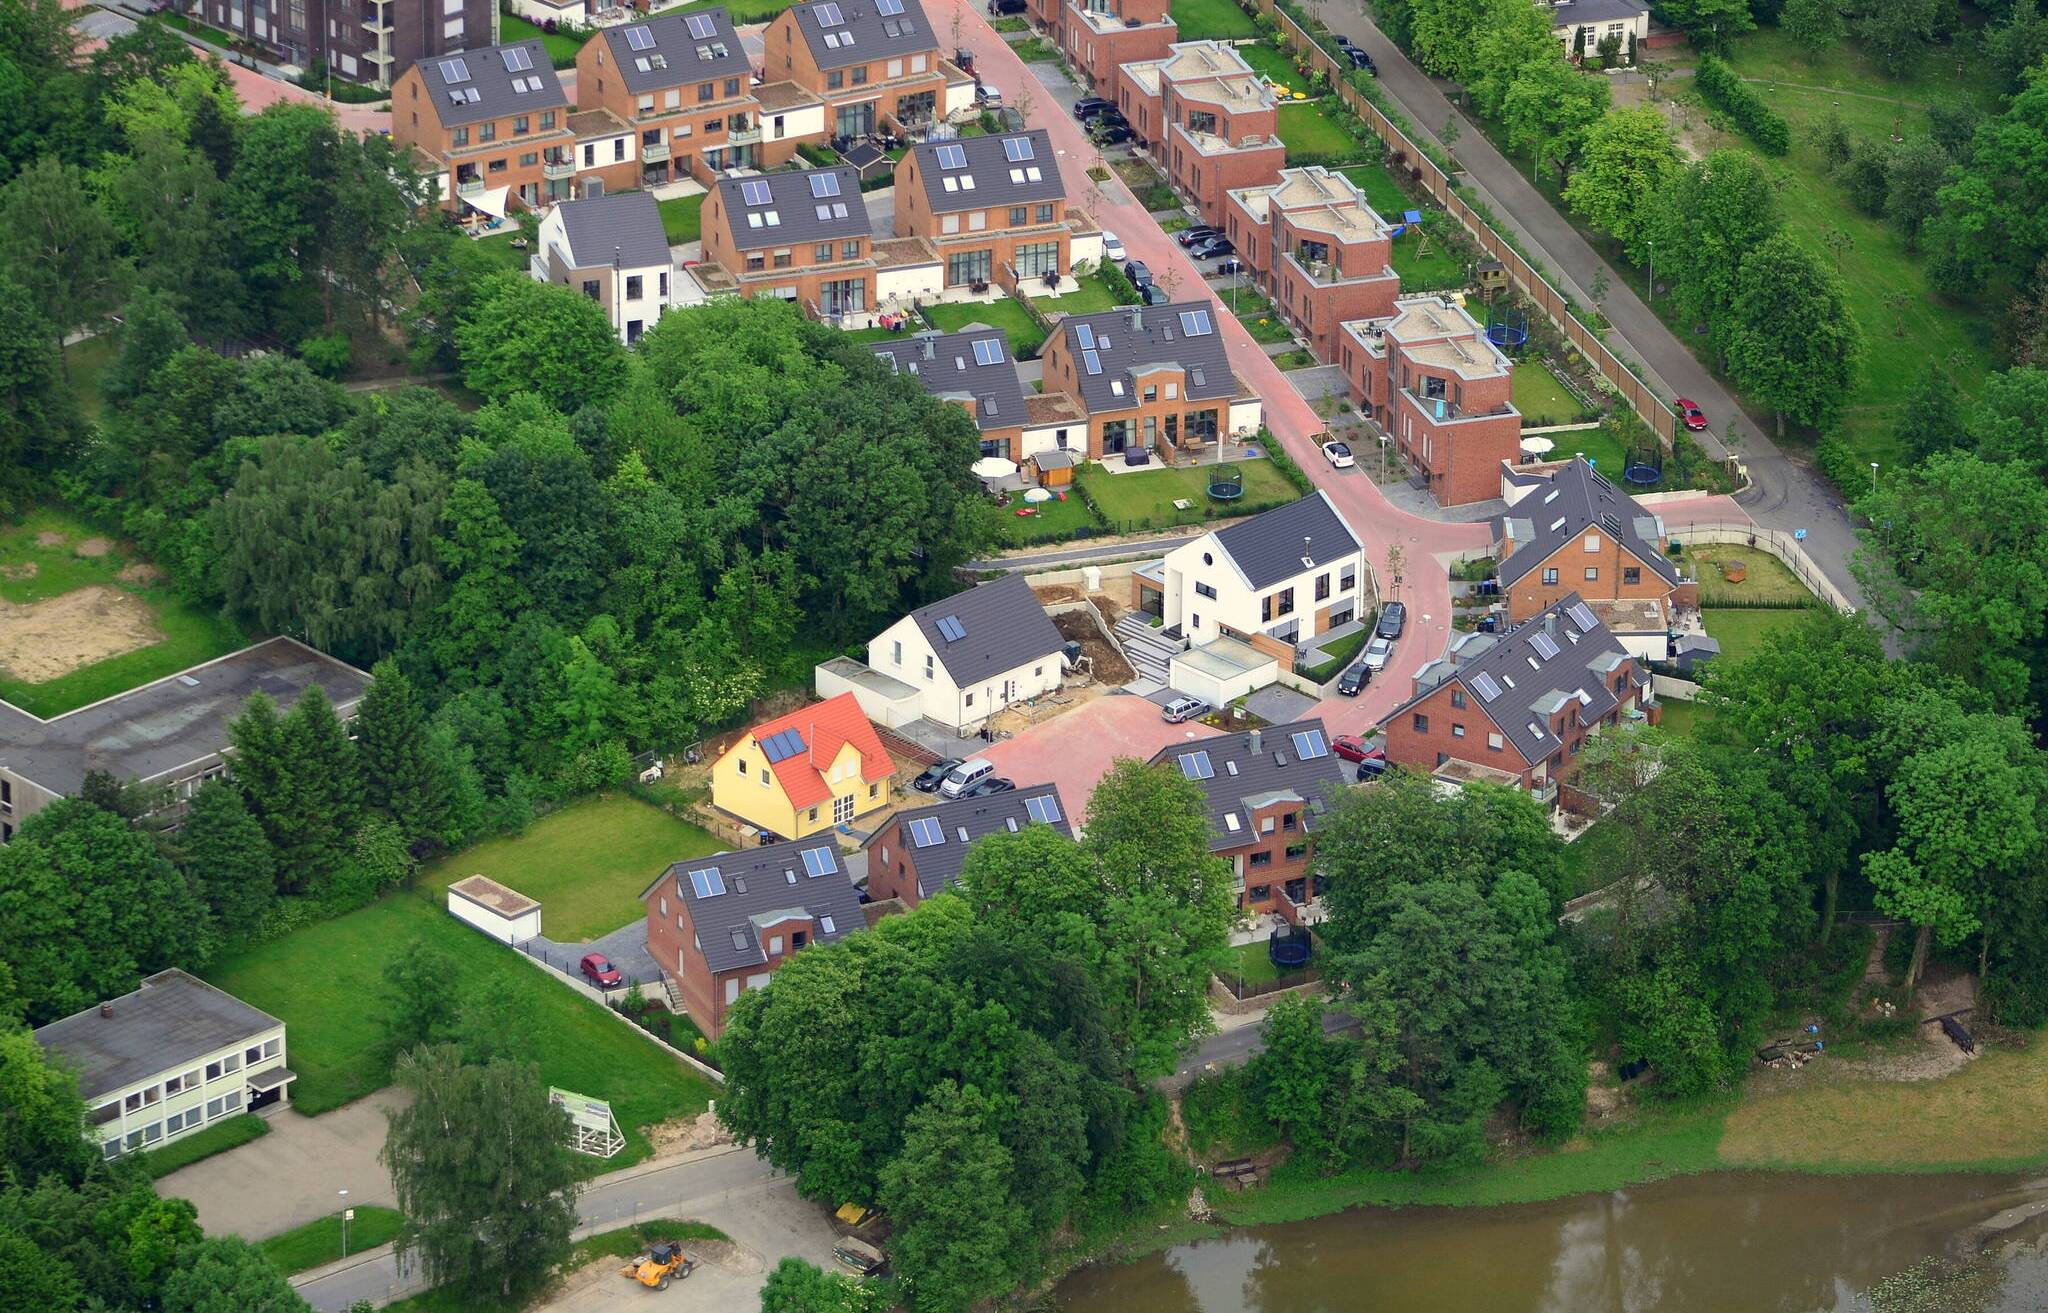  Siedlung am Stadtwald in Mettmann: Viel Versiegelung in Form von privaten Stellplätzen und Garagen.  